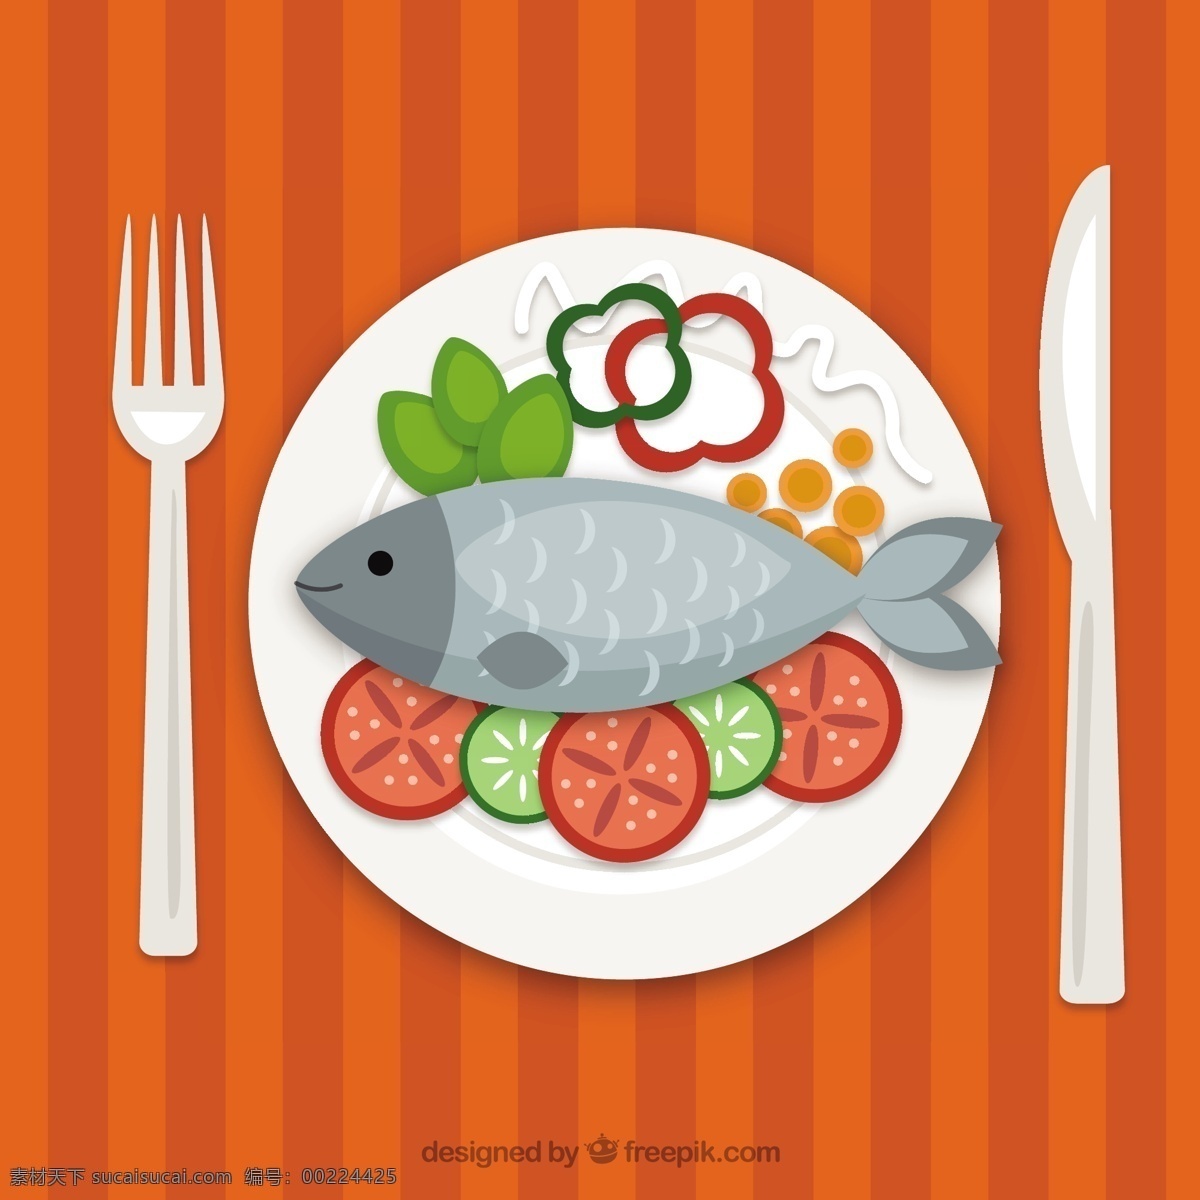 卡通 矢量 鱼 菜品 卡通鱼菜品 卡通菜品 刀 叉 橙色